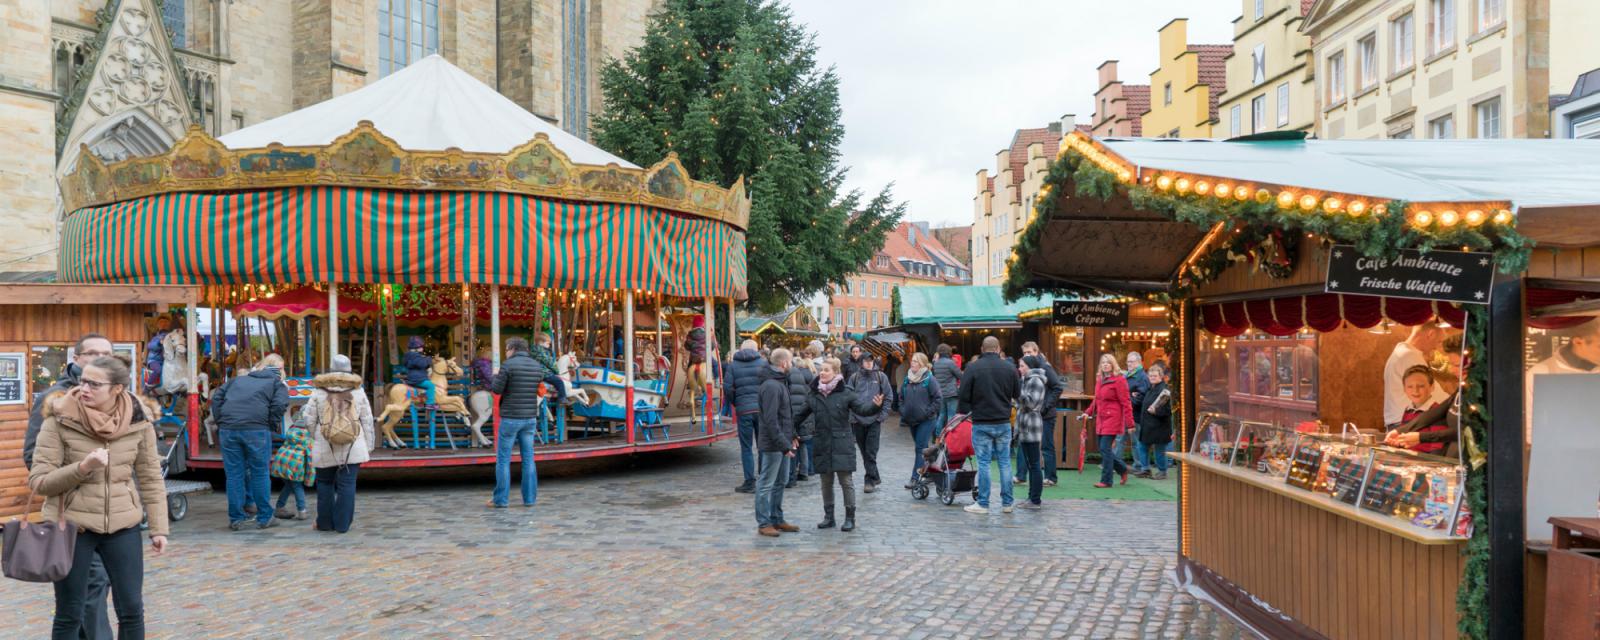 Bezoek de historische kerstmarkt van Osnabrück 